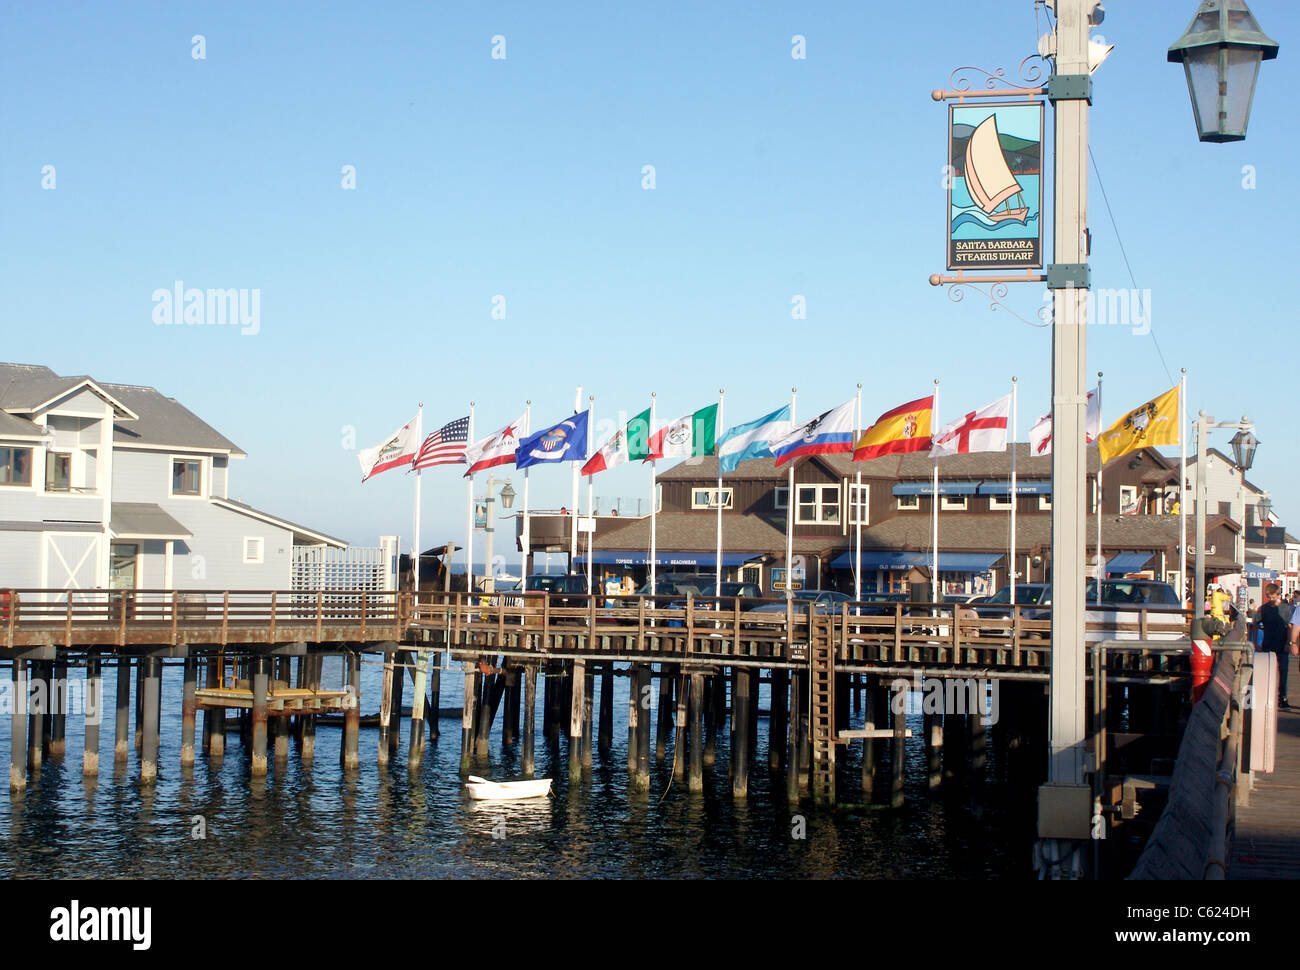 Stearns Wharf à Santa Barbara, Californie Banque D'Images